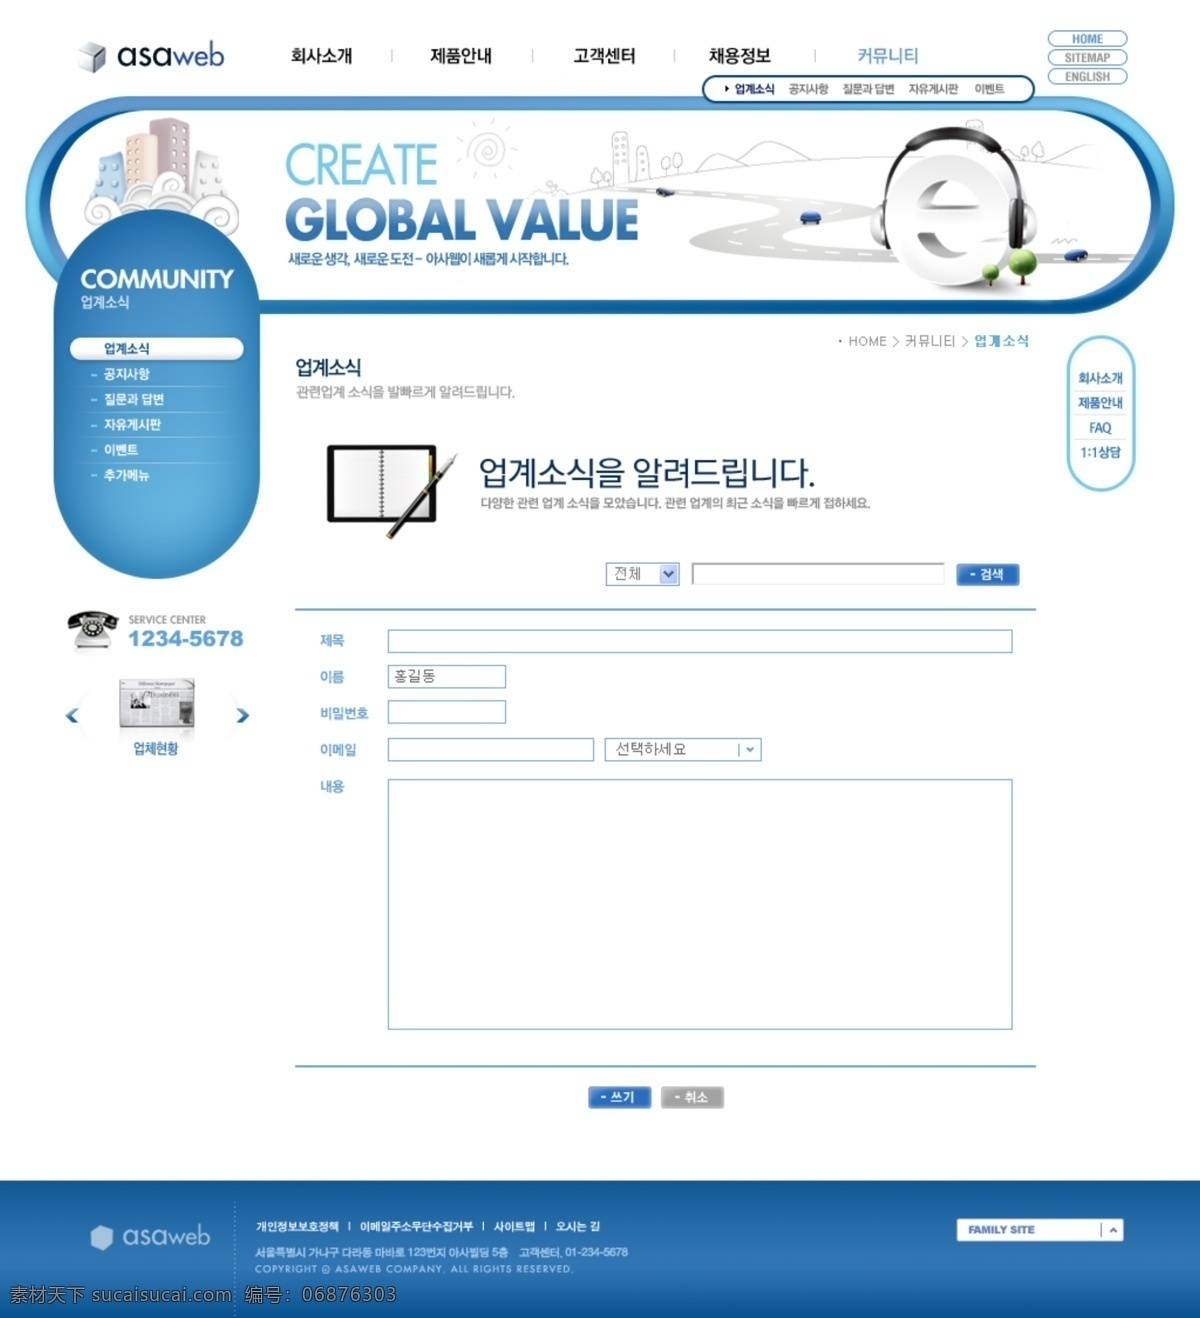 ui设计 版式设计 导航设计 公司网站 韩国网页 界面设计 科技发展 蓝色网页 数码科技 网页版式 企业形像 网页设计 网页模板 网页界面 网页素材